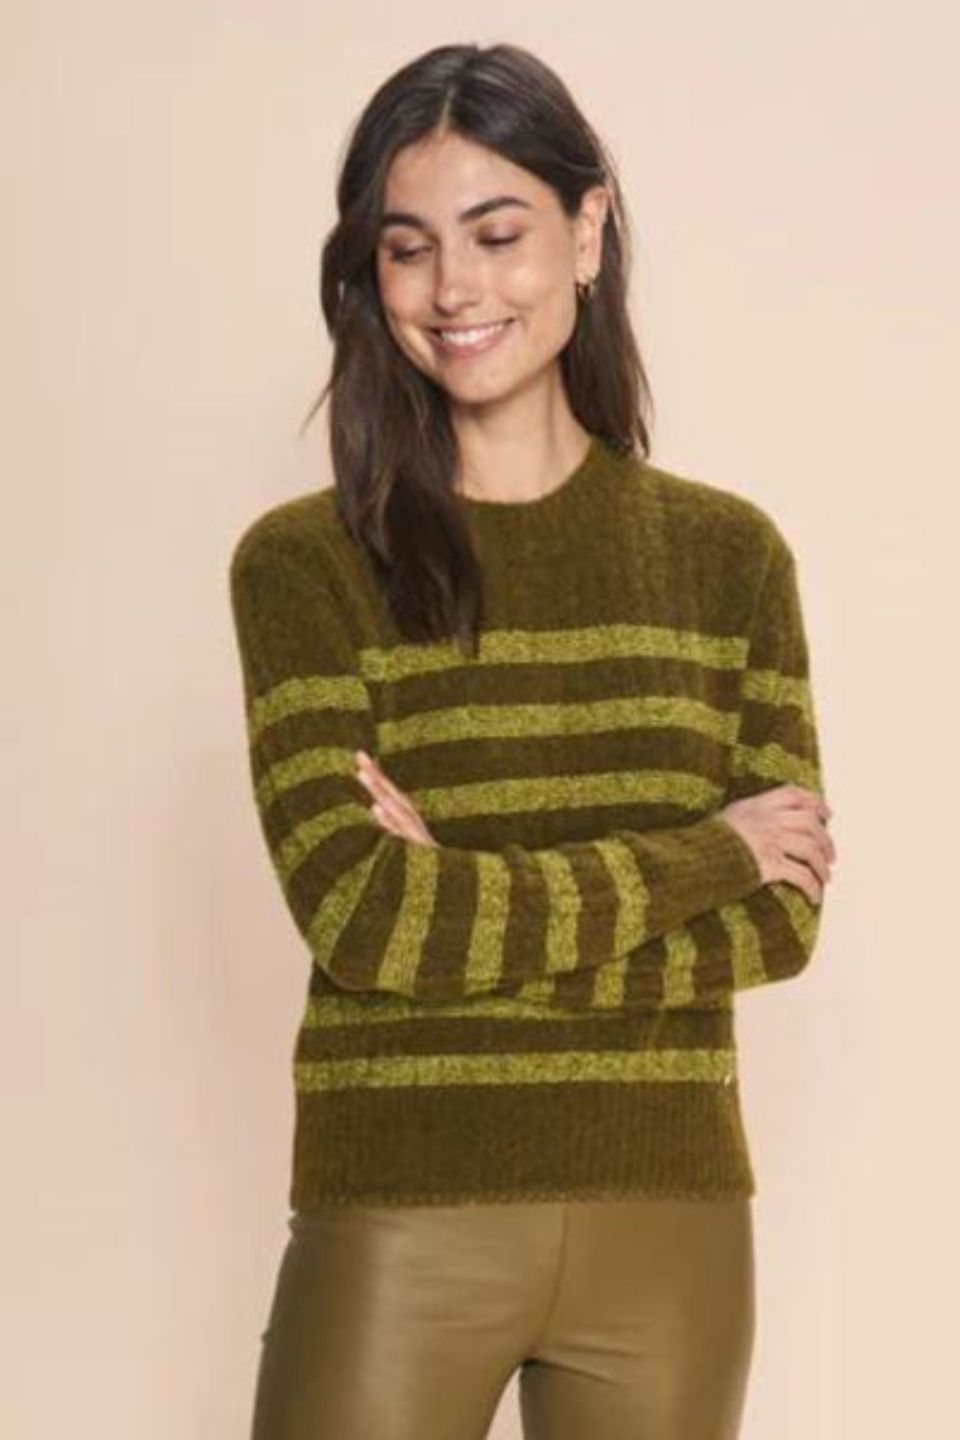 Debra Stripe Knit Green